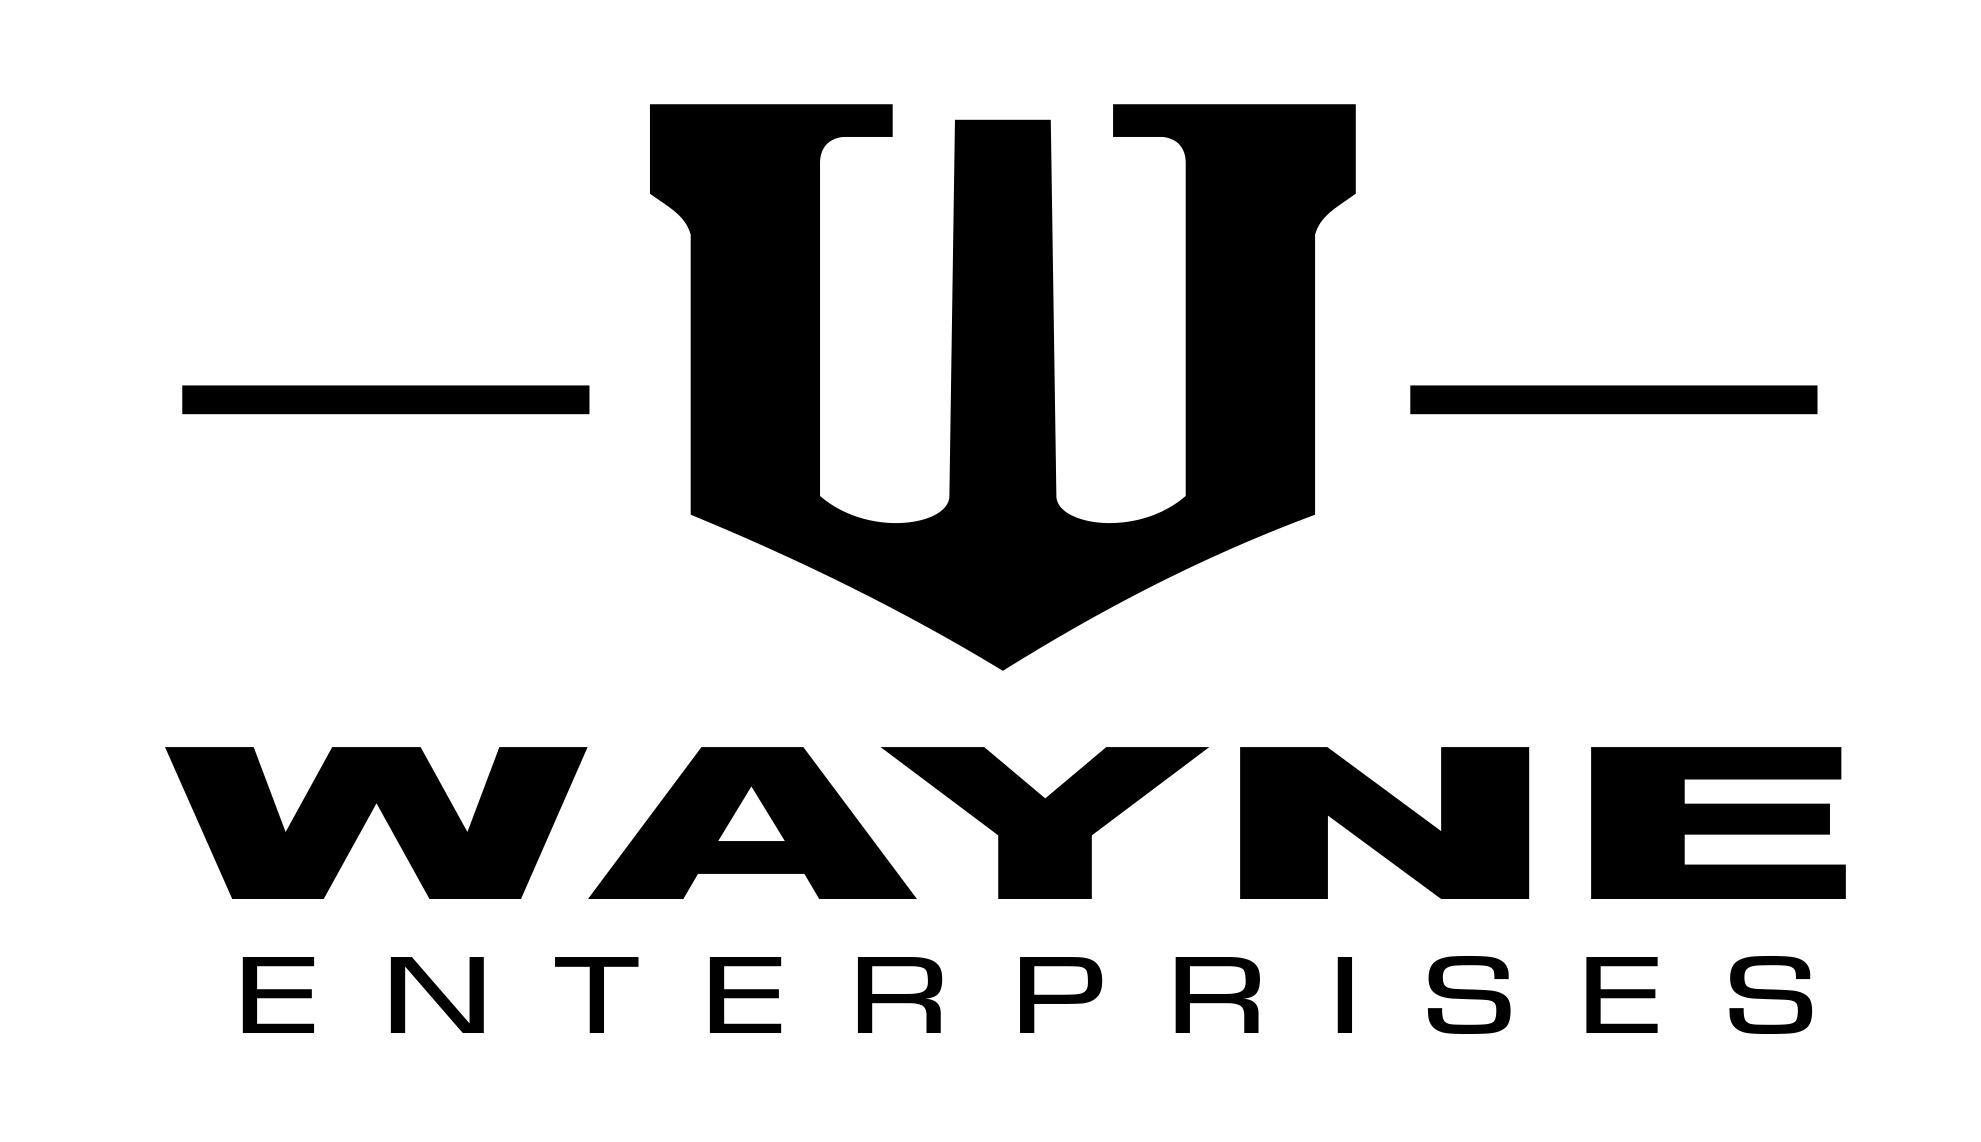 Wayne Enterprises. Wayne enterprises, Enterprise logo